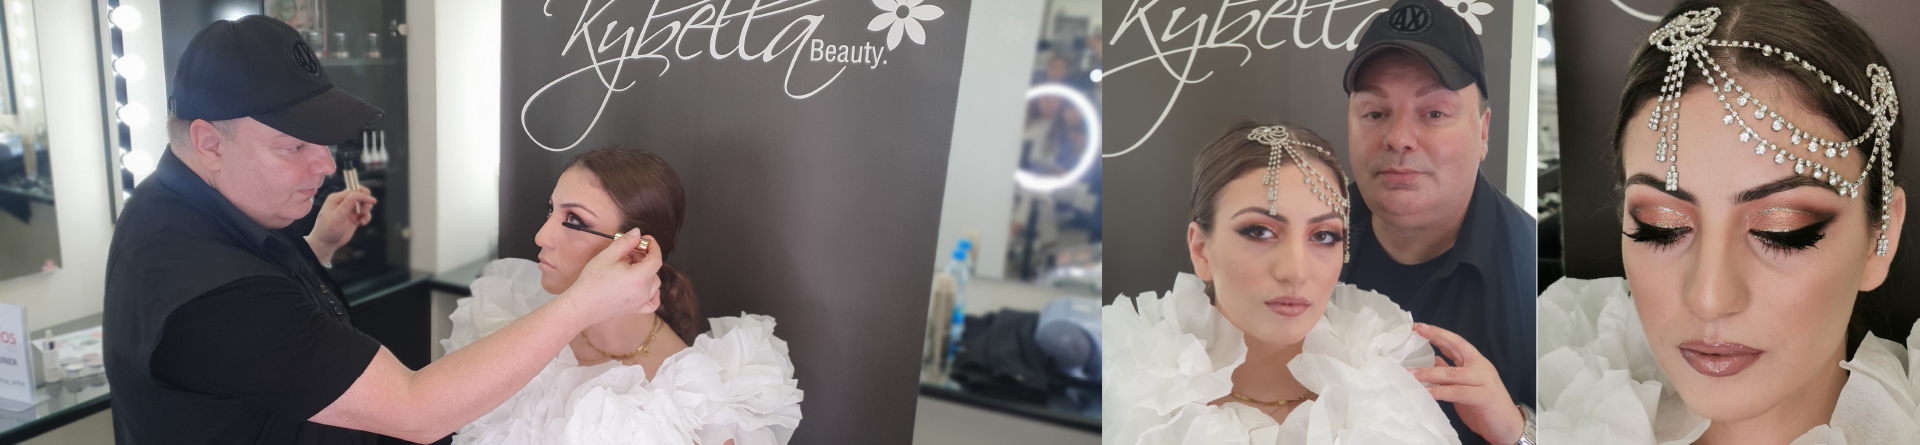 Παρουσίαση Νυμφικού Μακιγιάζ από τον Makeup Artist της εταιρείας Kybella Beauty Ltd στις φοιτήτριες των Αξιολογημένων - Πιστοποιημένων Προγραμμάτων Σπουδών Αισθητικής του KES COLLEGE